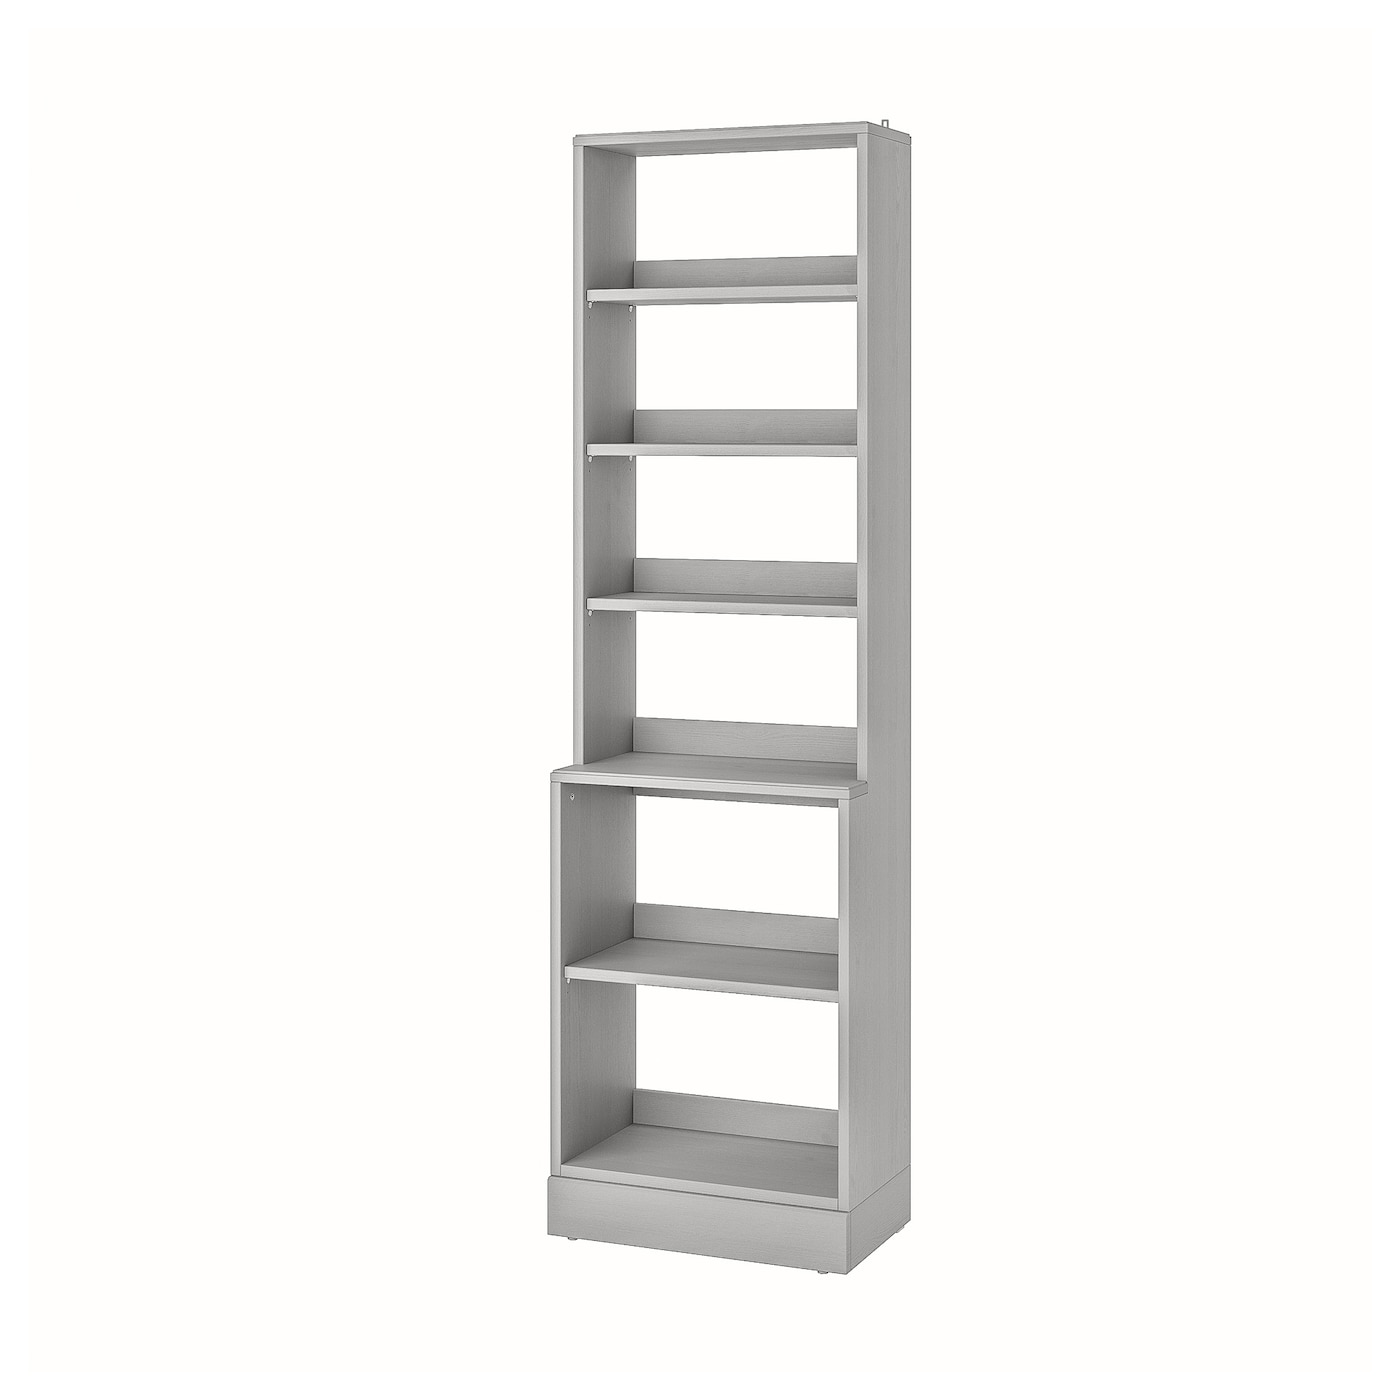 Книжный шкаф - HAVSTA IKEA/ ХАВСТА ИКЕА,  212х61 см, серый